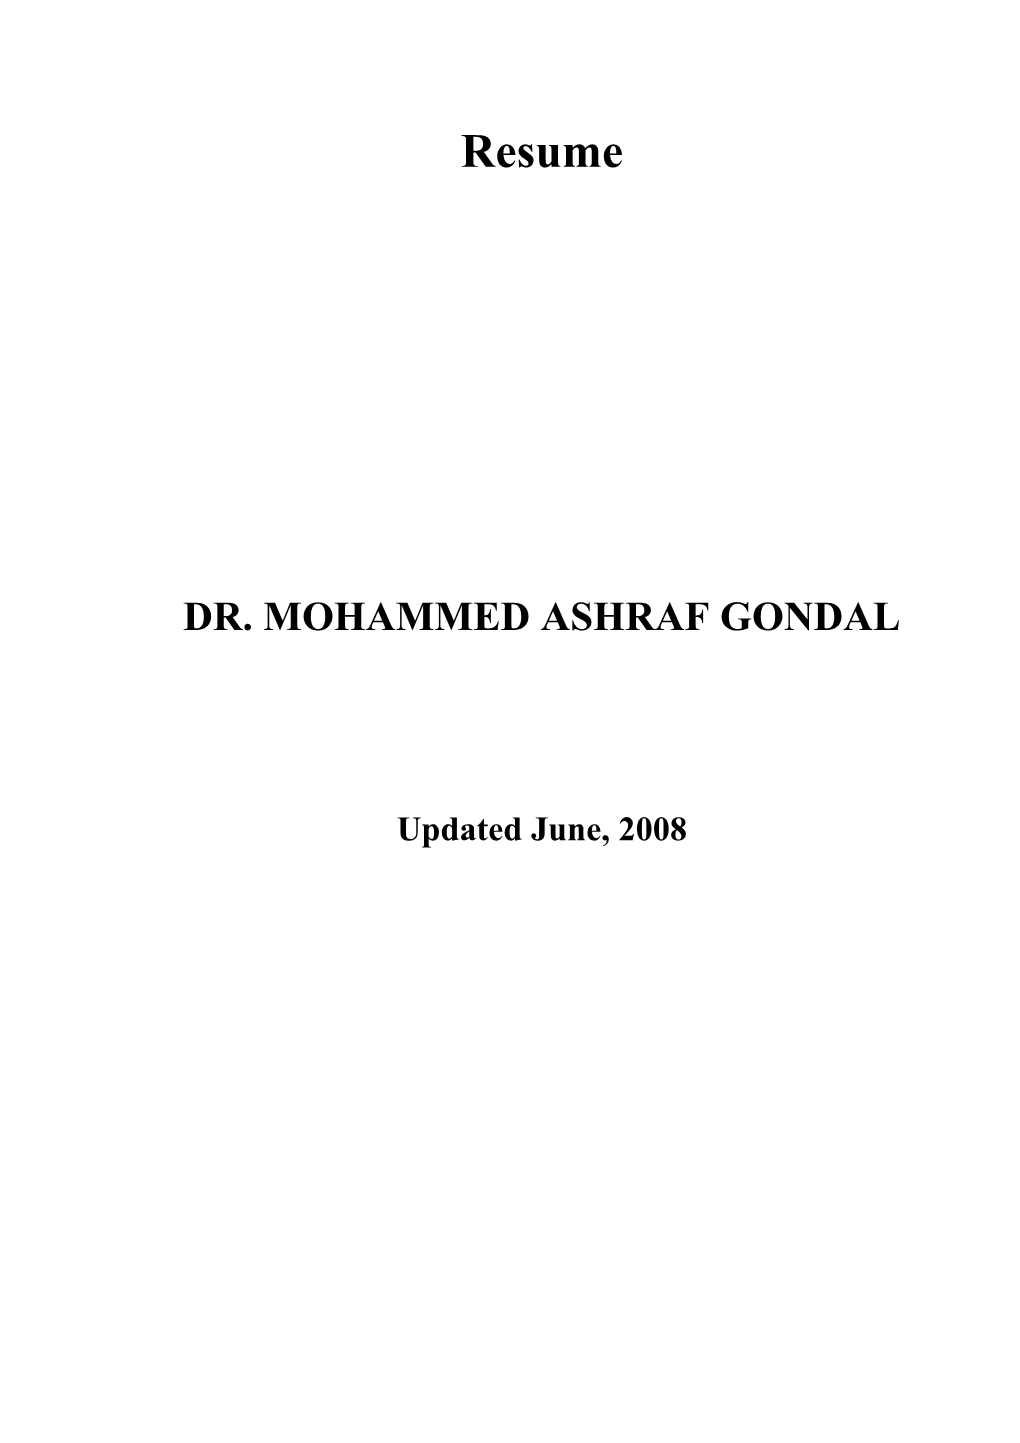 Dr. Mohammed Ashraf Gondal